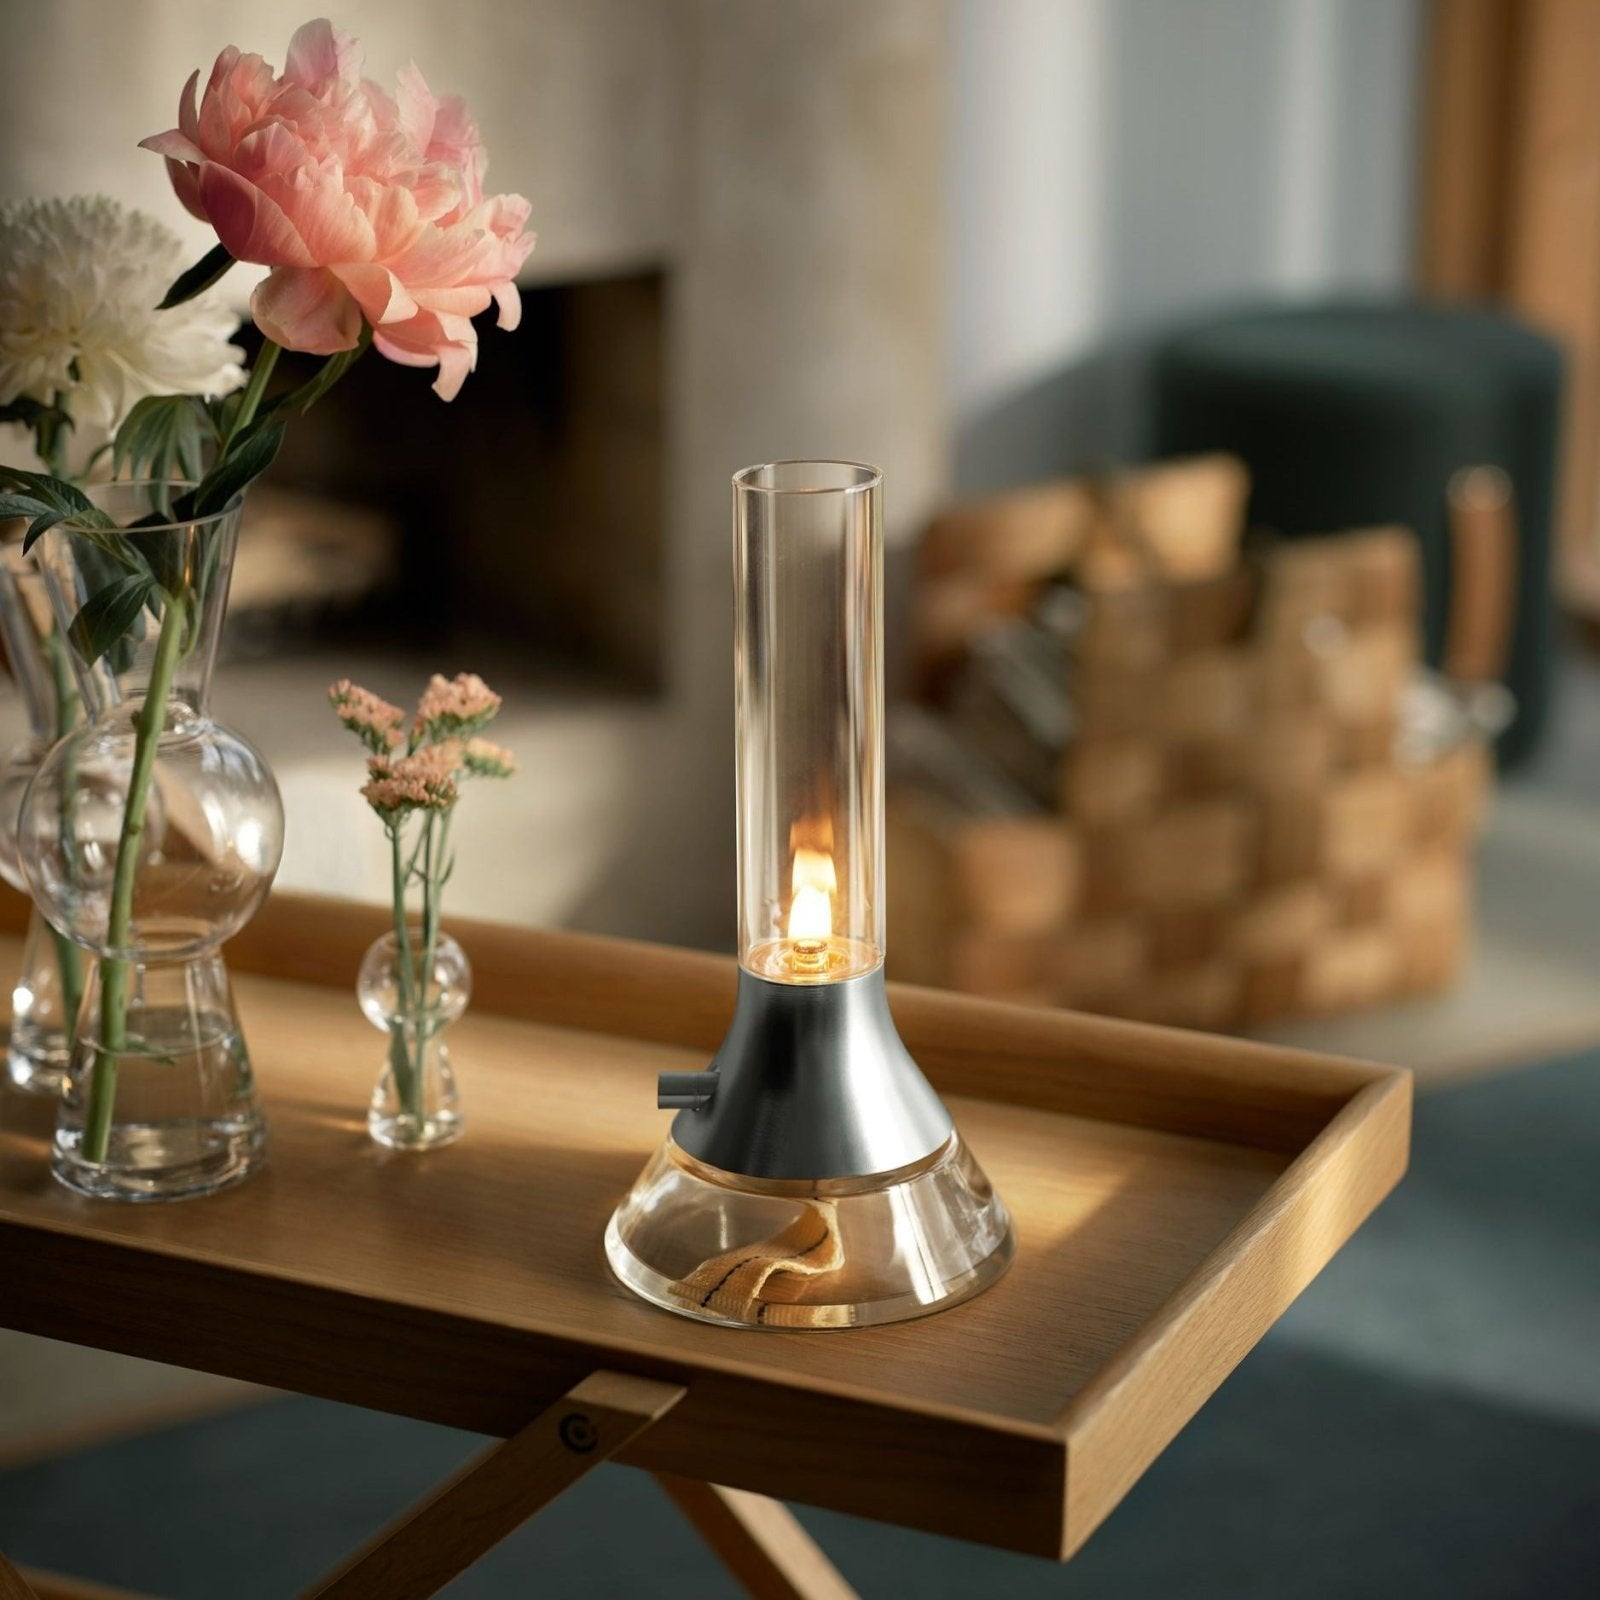 Fyr - Oil lamp / kerosene lamp Table lamp by Design House Stockholm